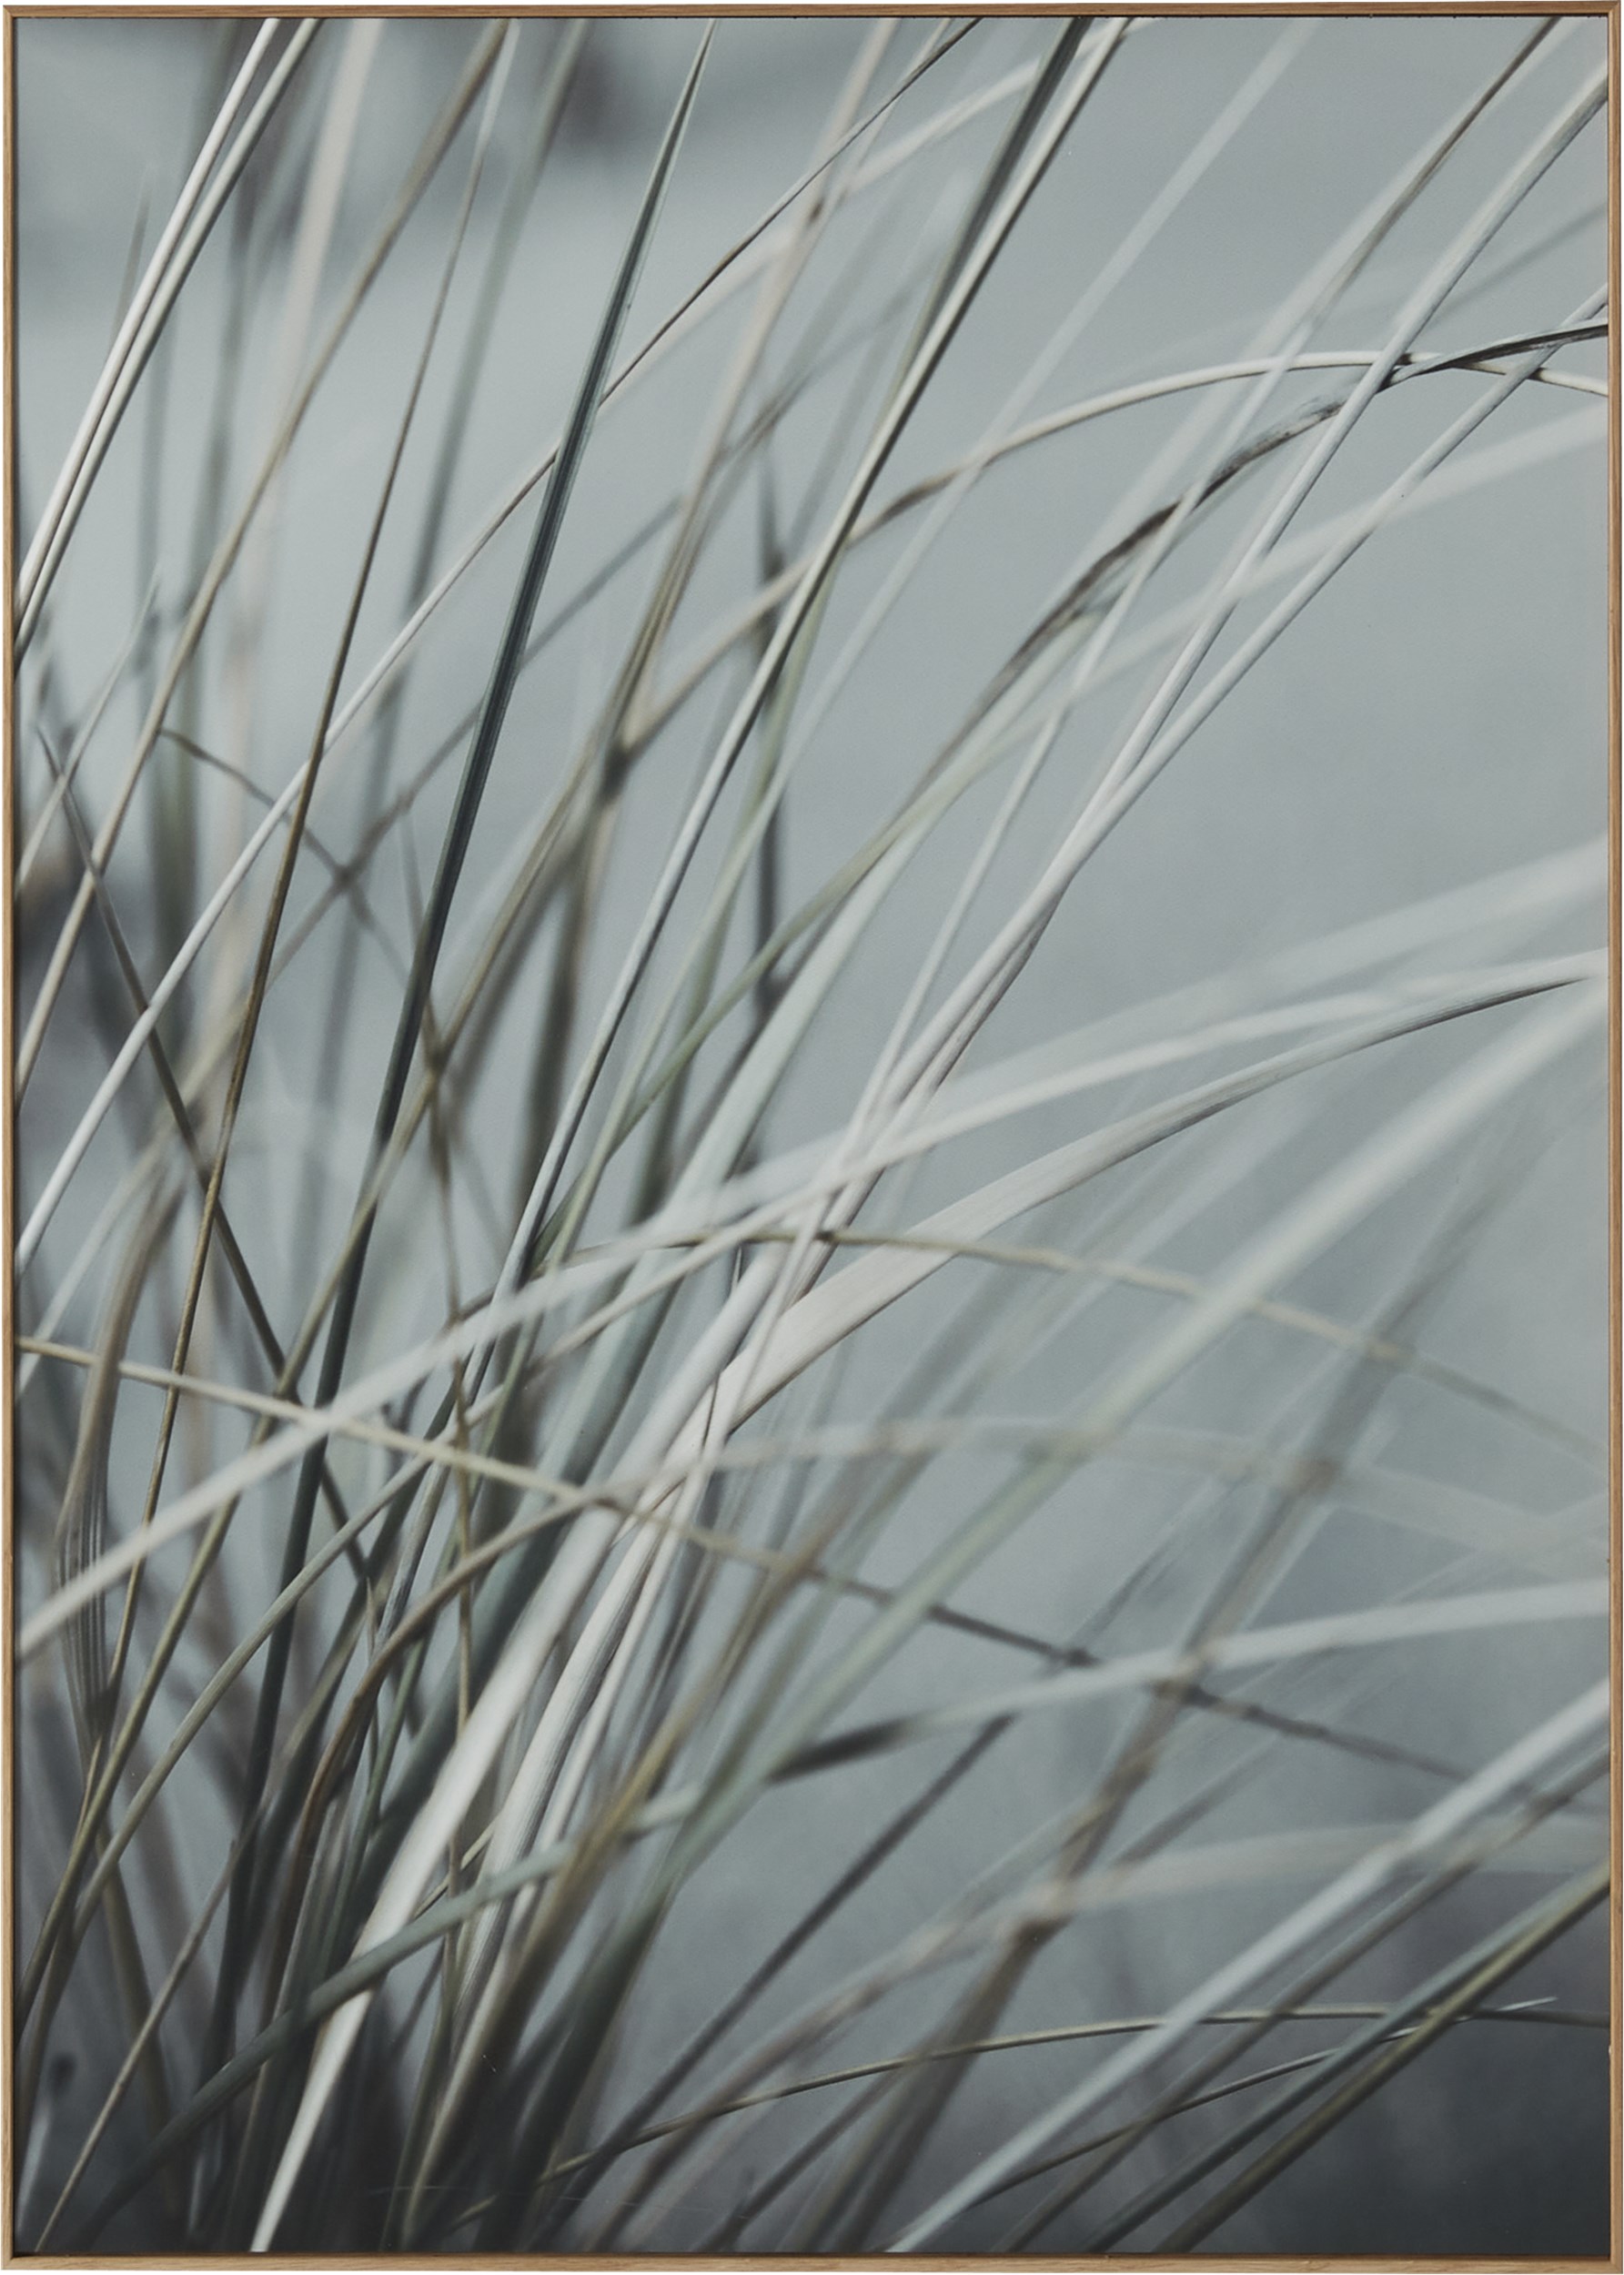 Havdal Fotoprint 50 x 70 x 1,9 cm - Grasses no.3 och träram i ek